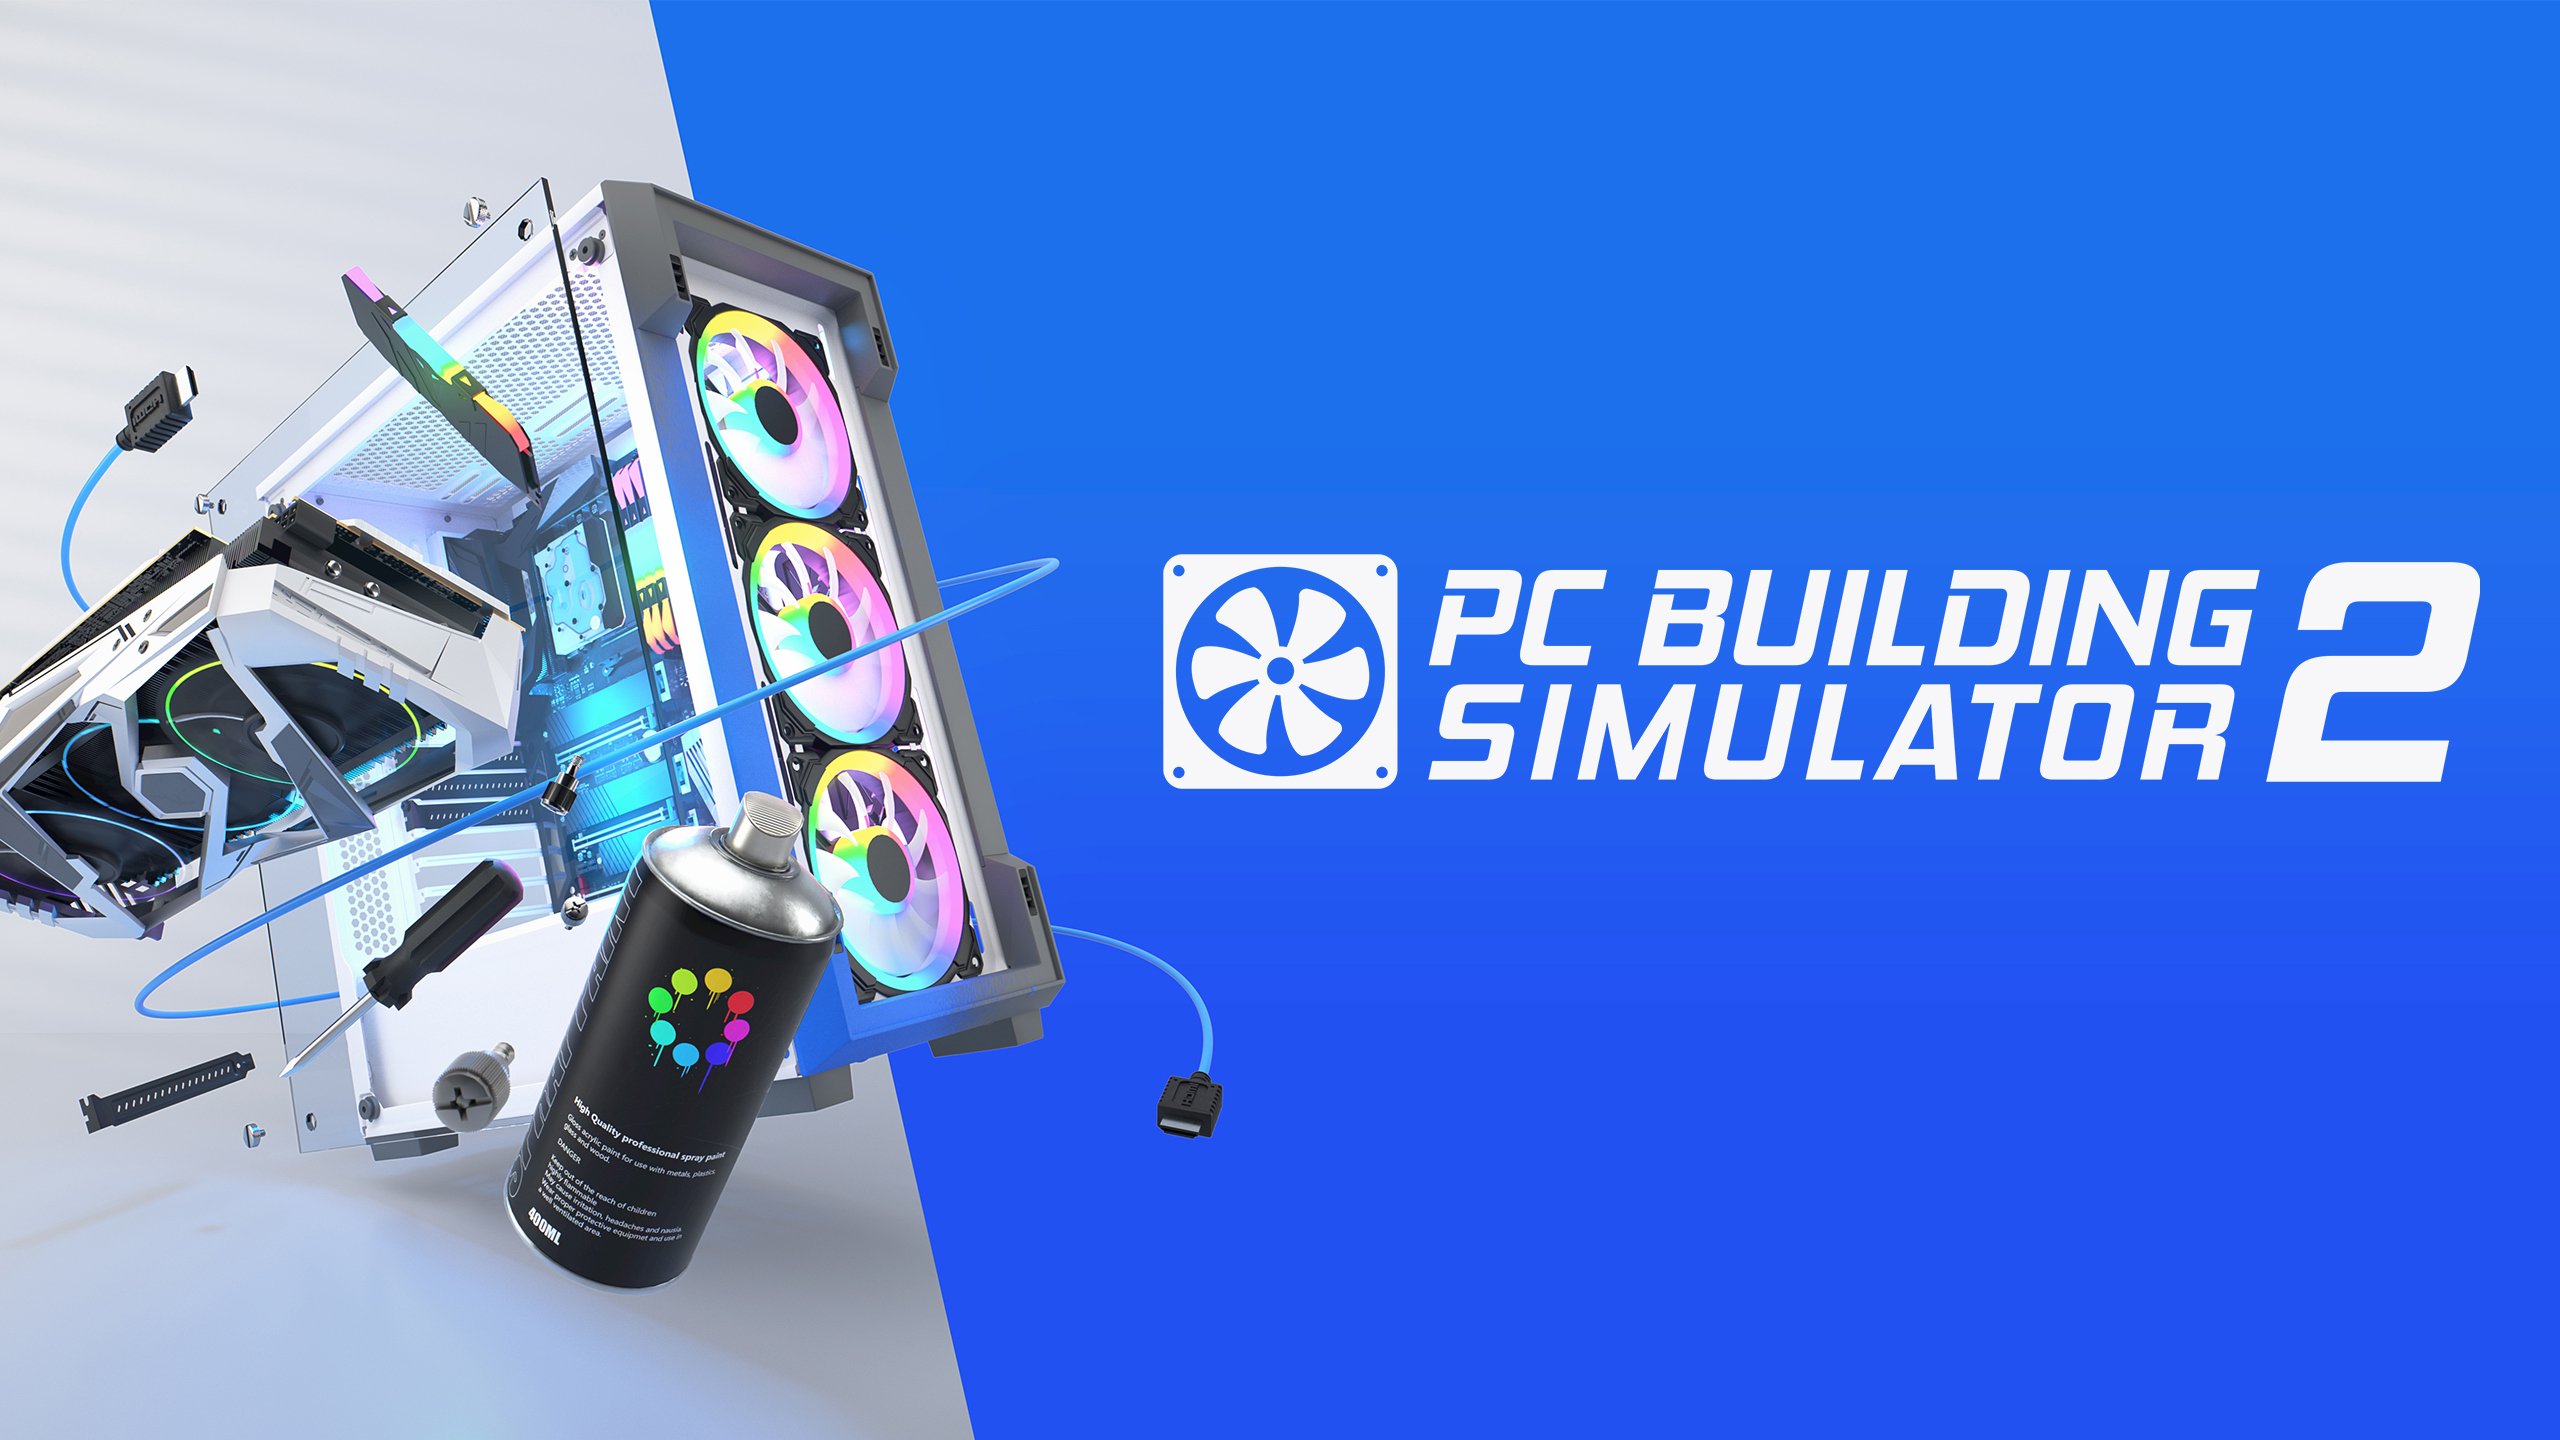 Mời anh em chơi thử beta PC Building Simulator 2: Giả lập thợ ráp PC cấu hình khủng